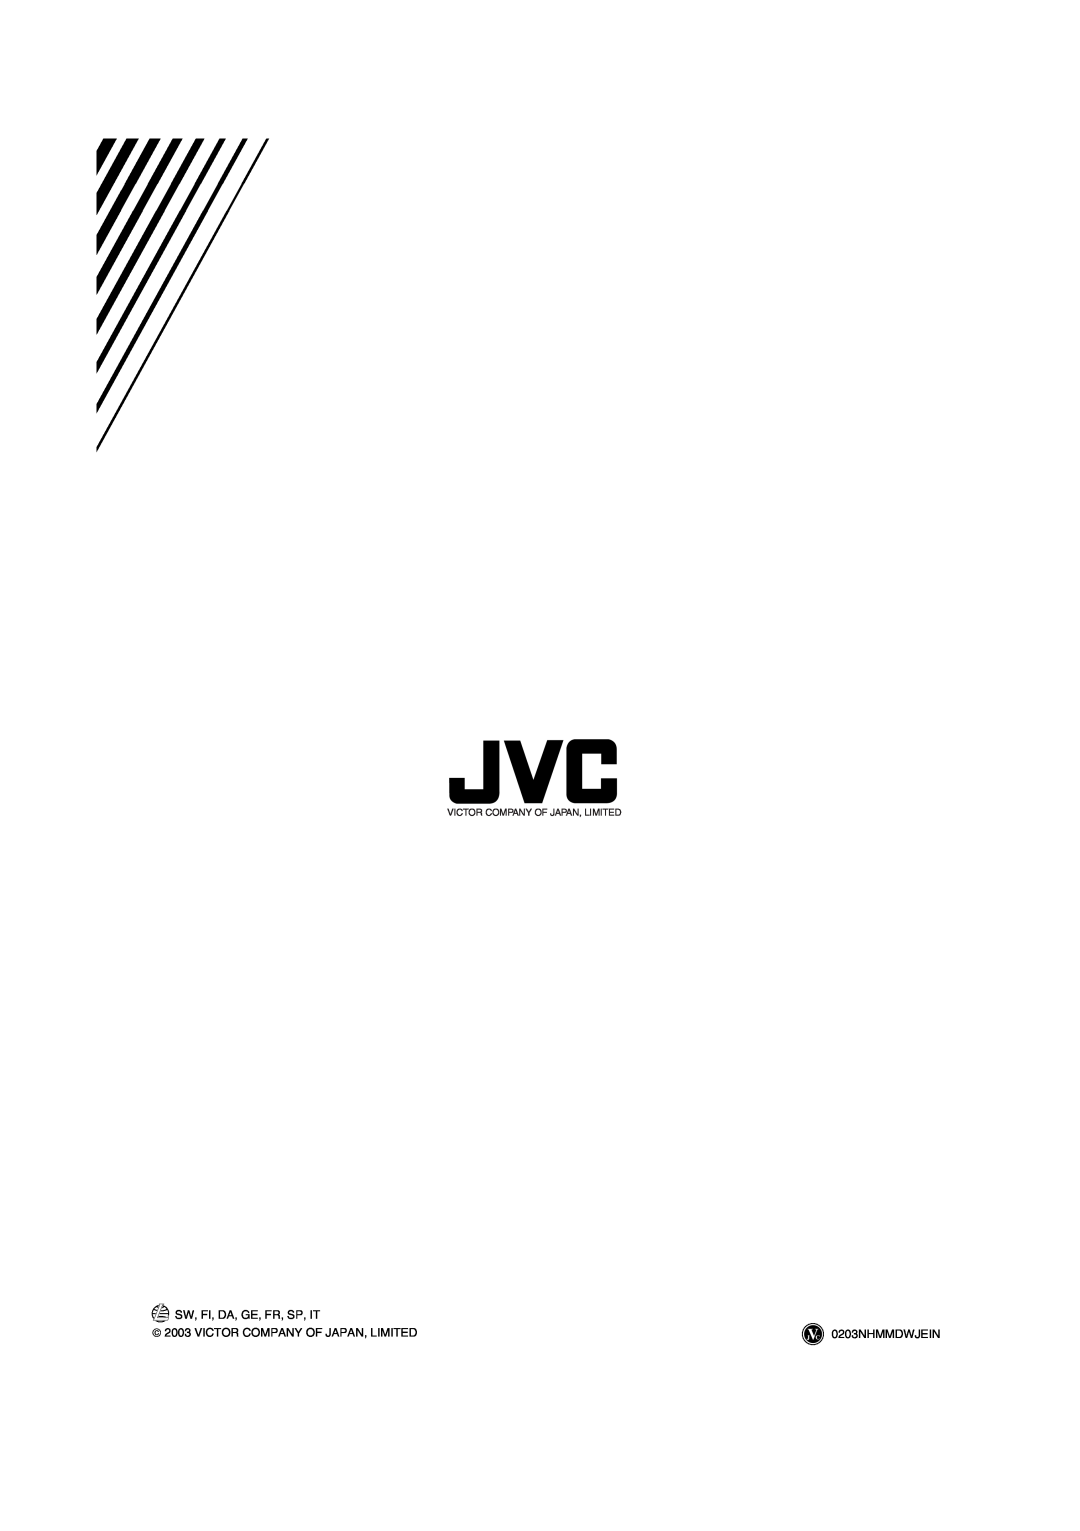 JVC RX-ES1SL manual Sw, Fi, Da, Ge, Fr, Sp, It,  2003 VICTOR COMPANY OF JAPAN, LIMITED, 0203NHMMDWJEIN 